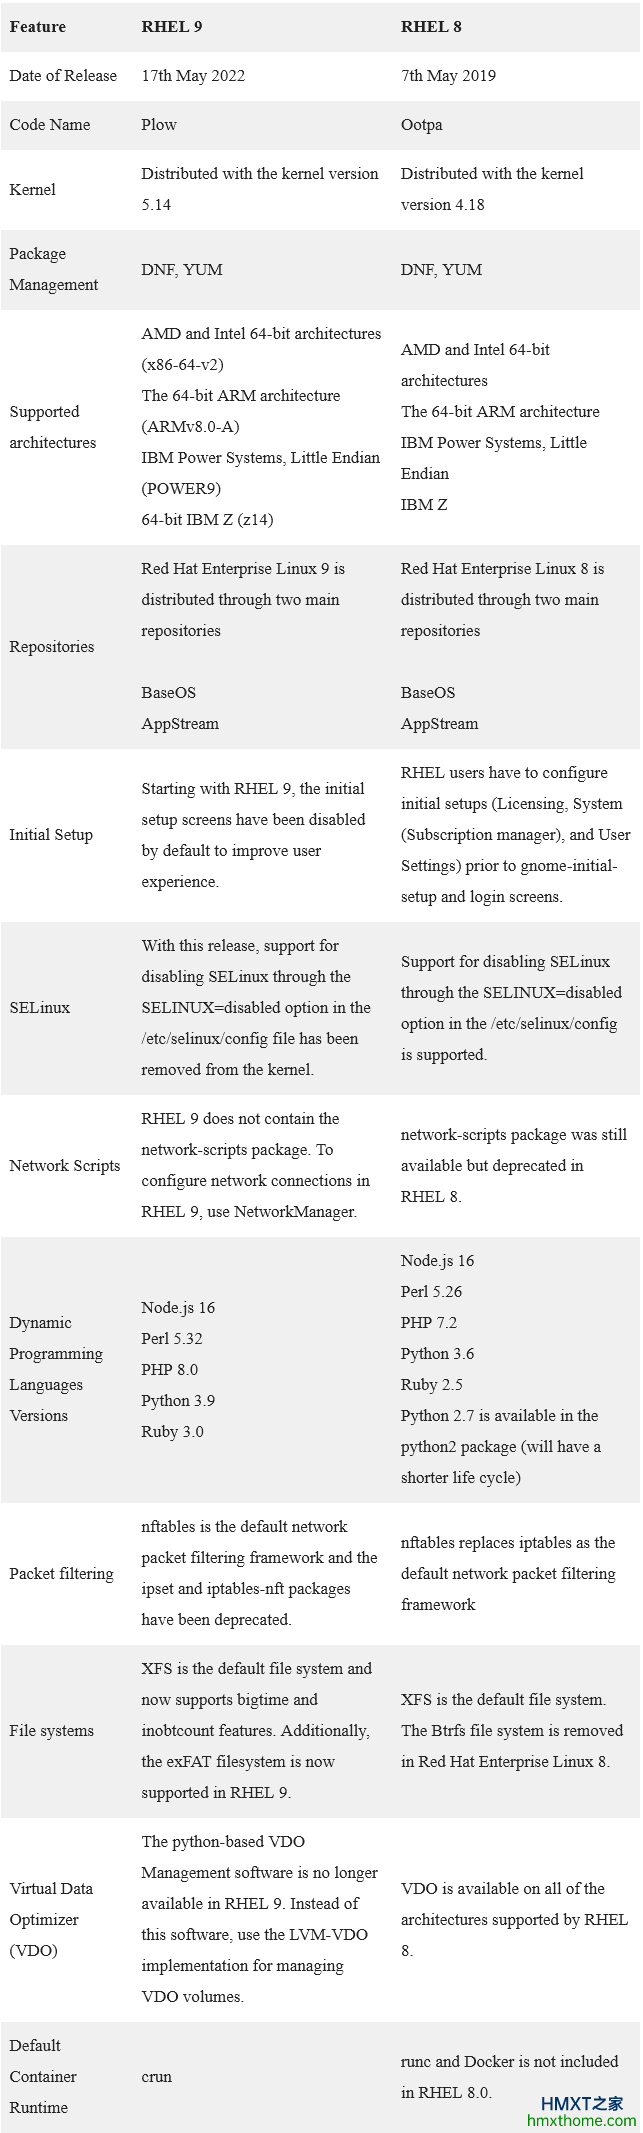 RHEL 8与RHEL 9的比较表